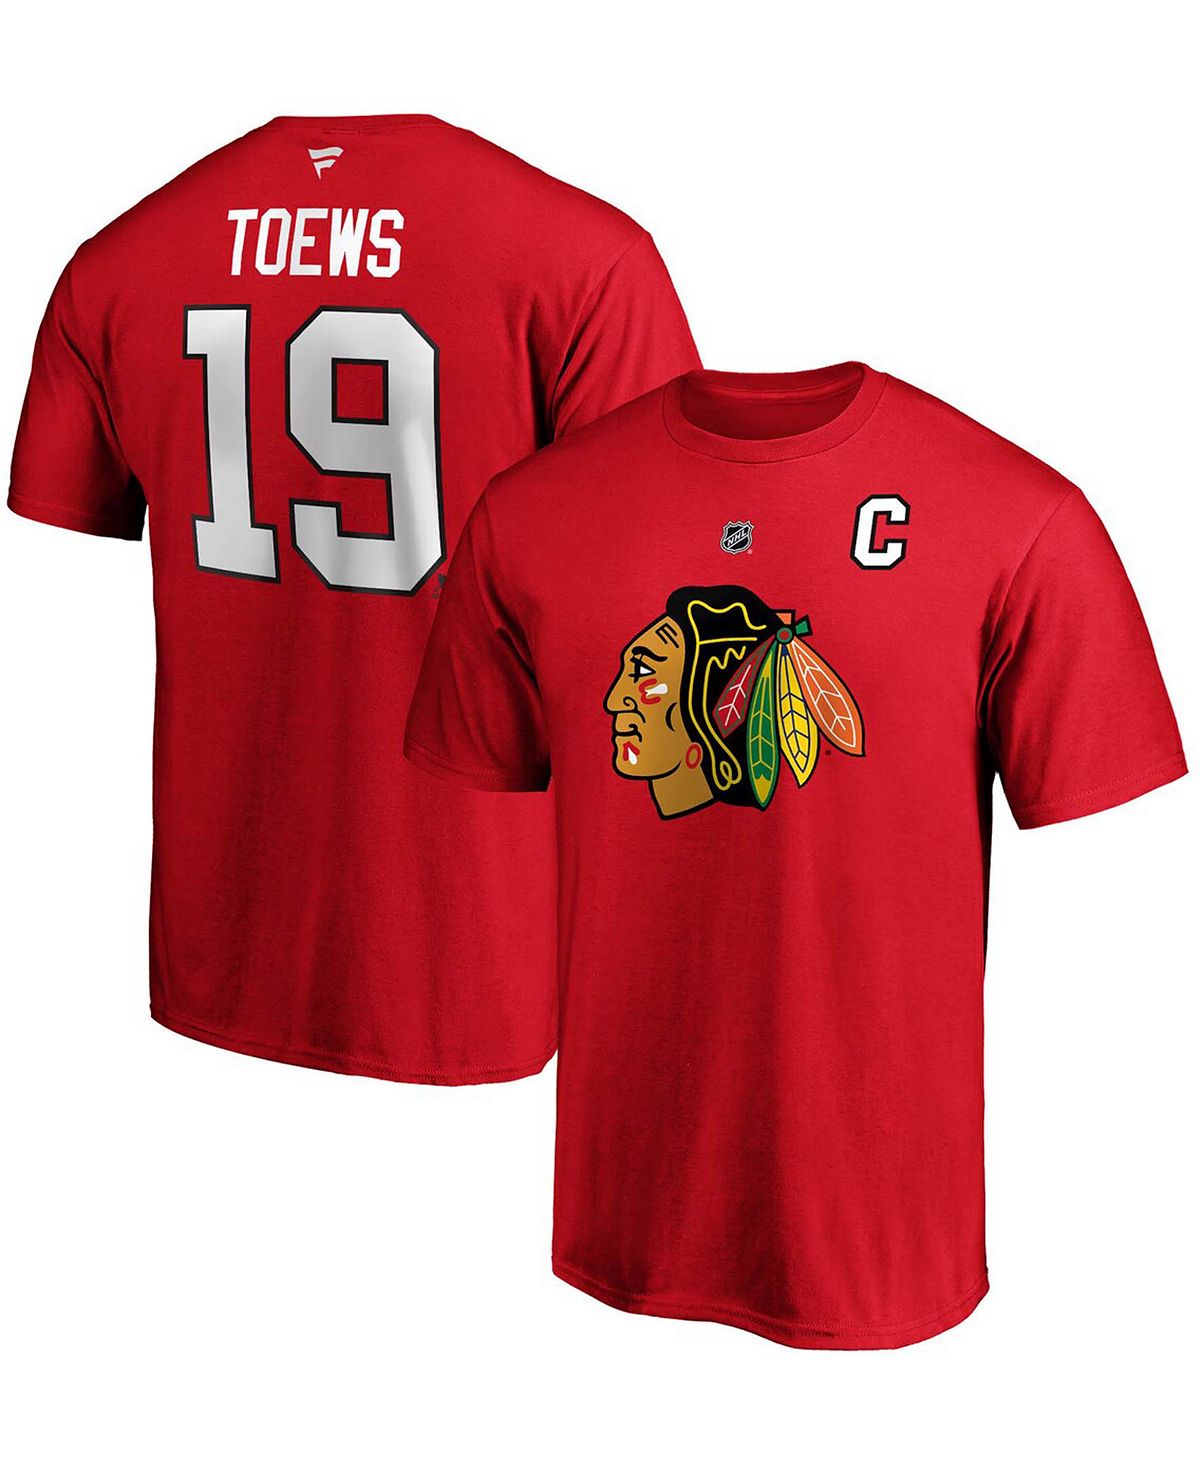 Мужская футболка jonathan toews red chicago blackhawks team с аутентичным названием и номером стека Fanatics, красный